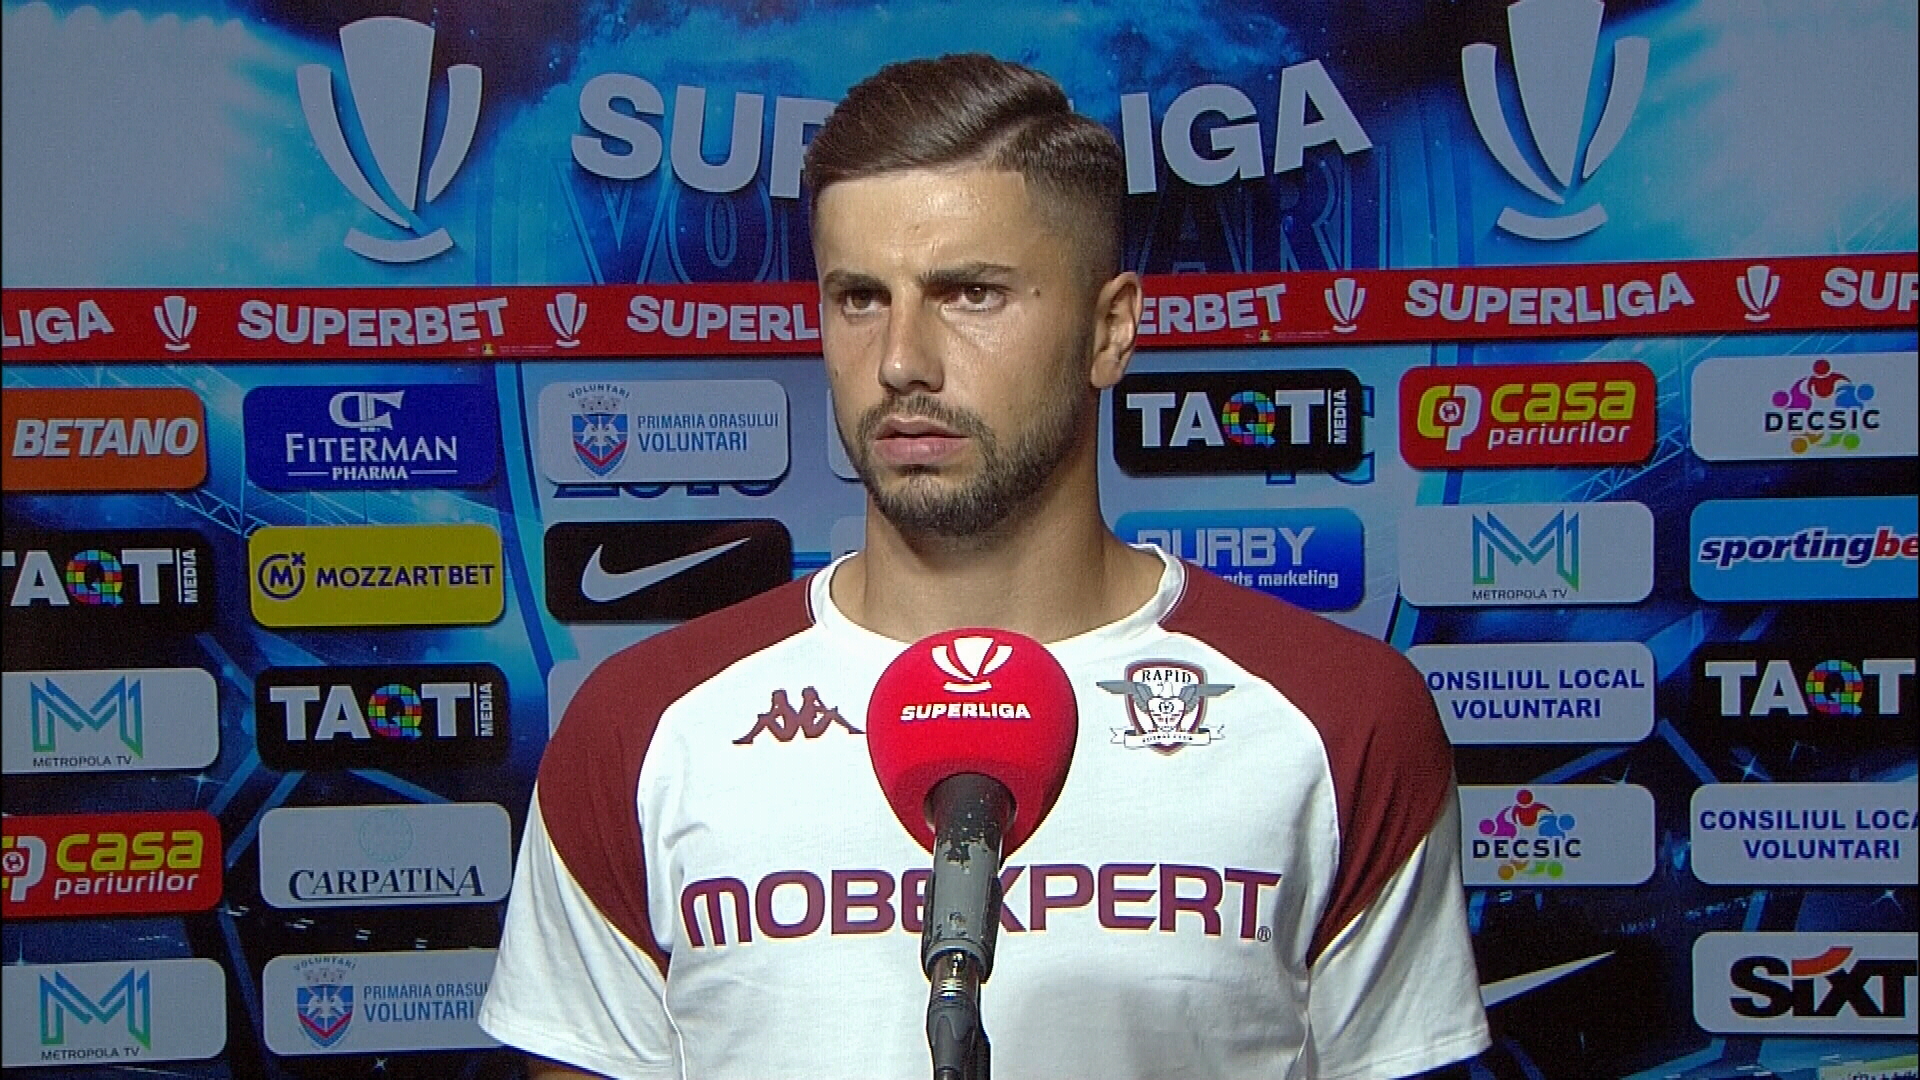 ”Eu mi-am bătut echipa singur”. Moldovan s-a enervat după gafele din meciul cu Voluntari: ”Trebuia să pui întrebarea asta?”